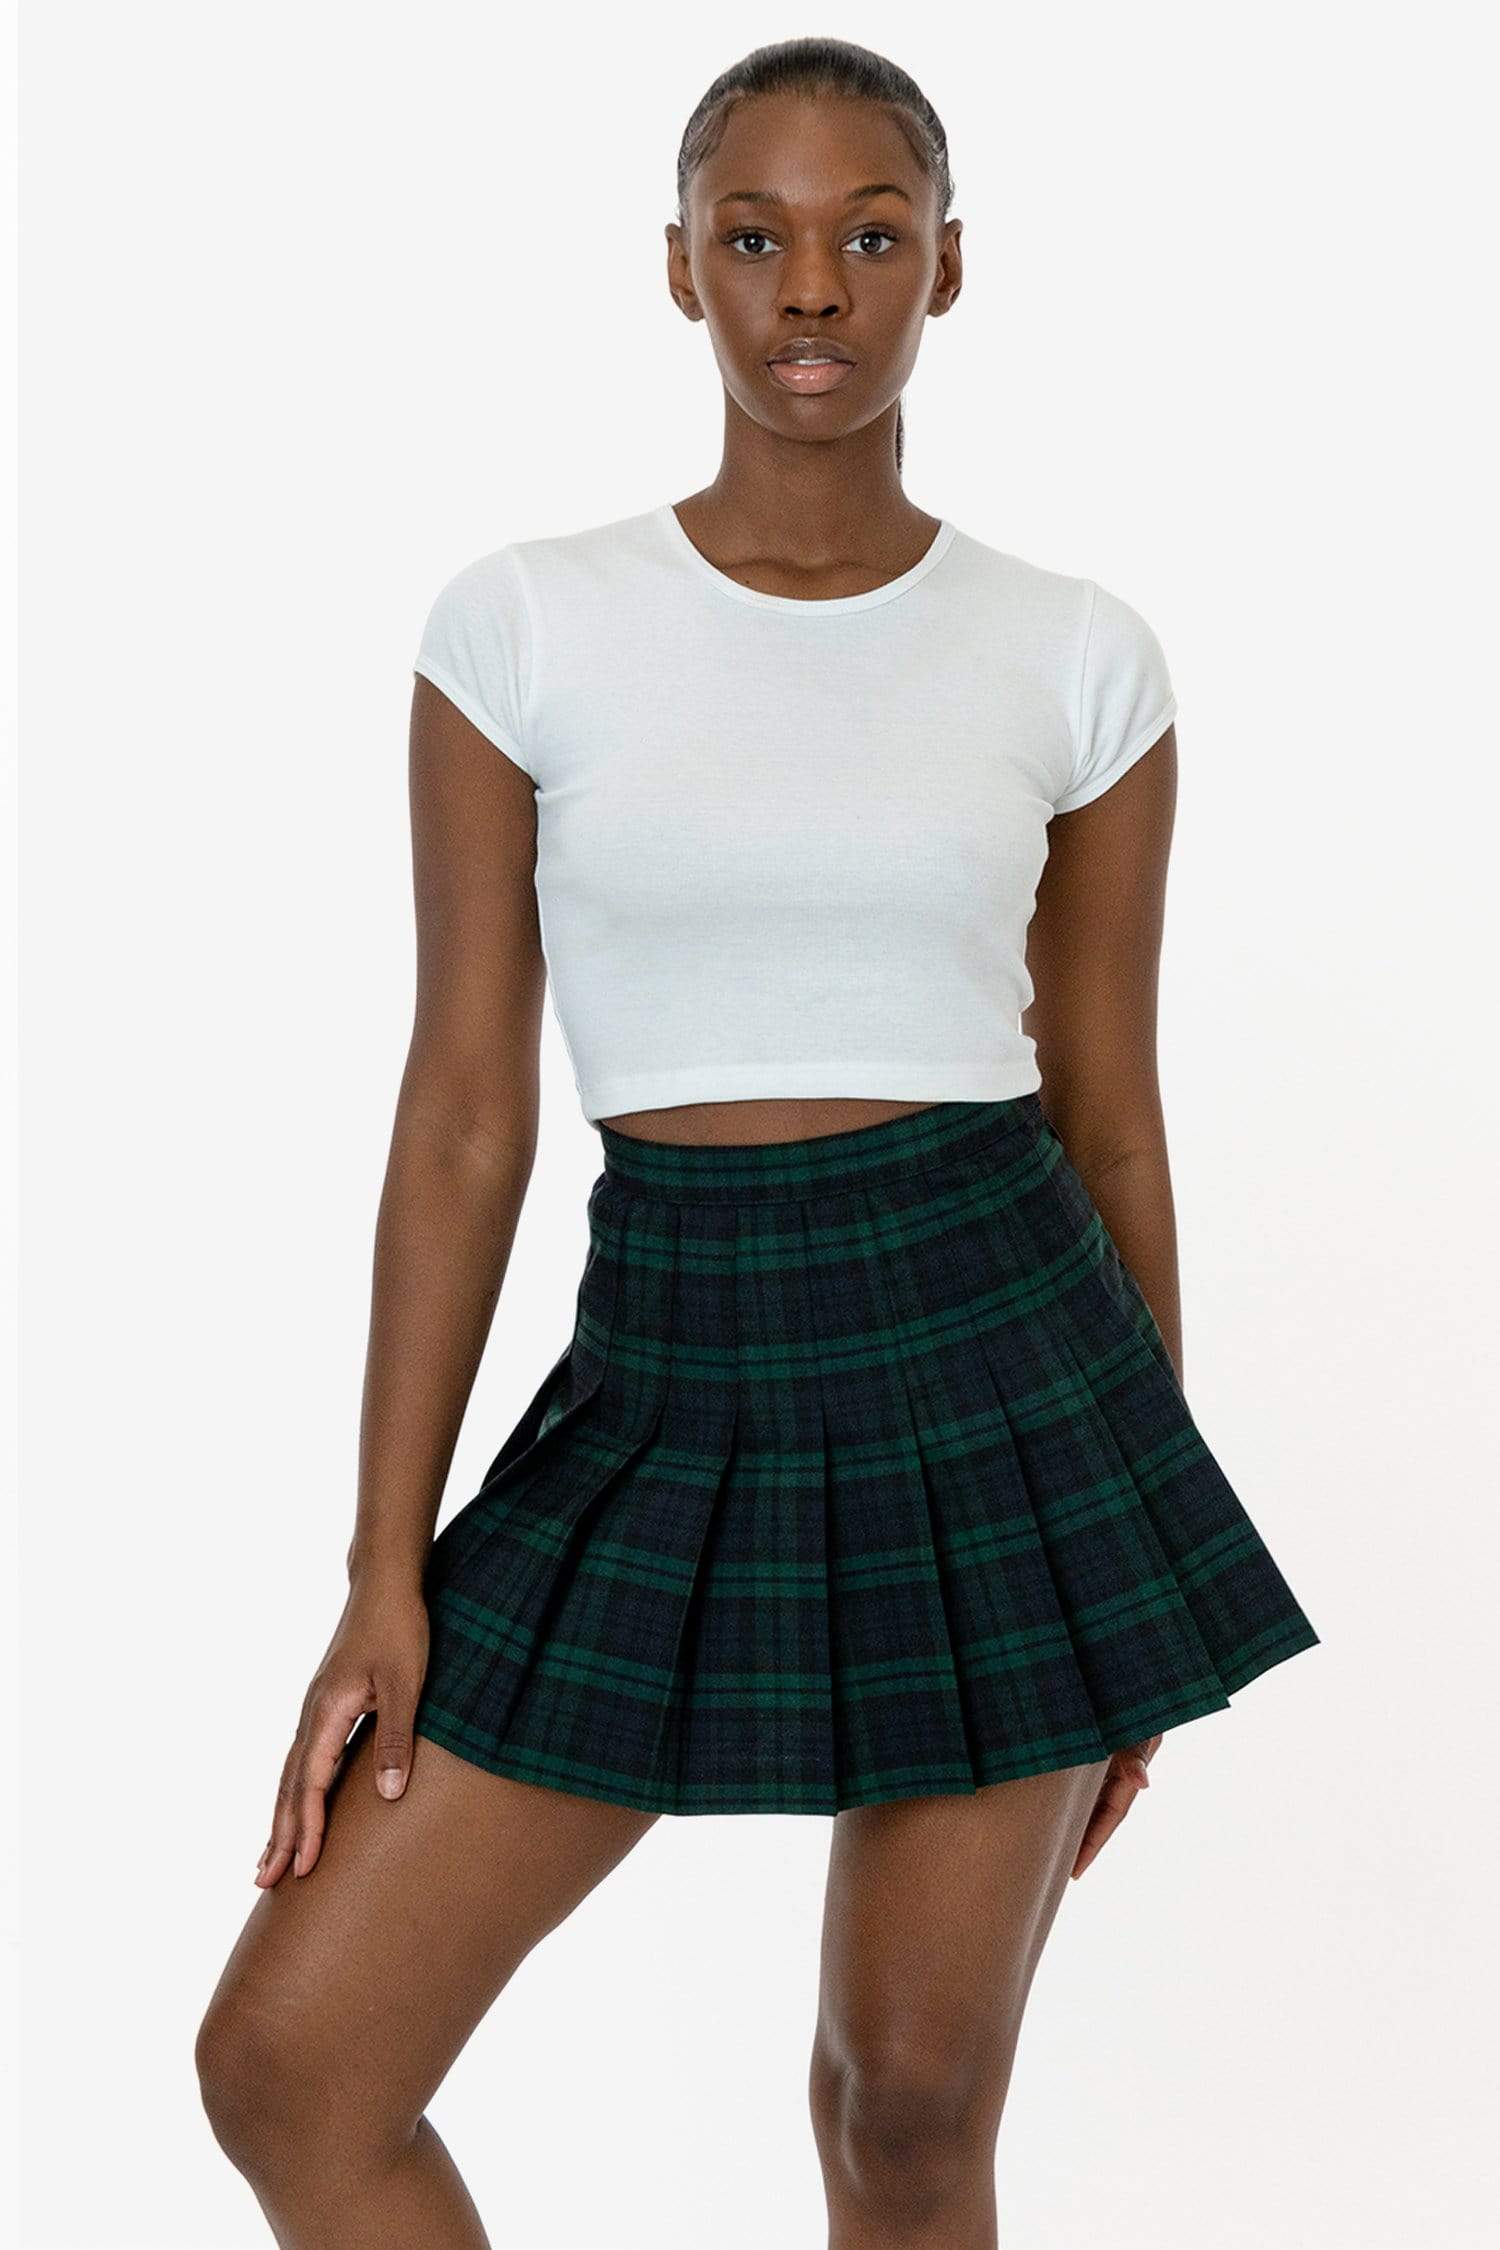 los angeles apparel Plaid Tennis Skirt